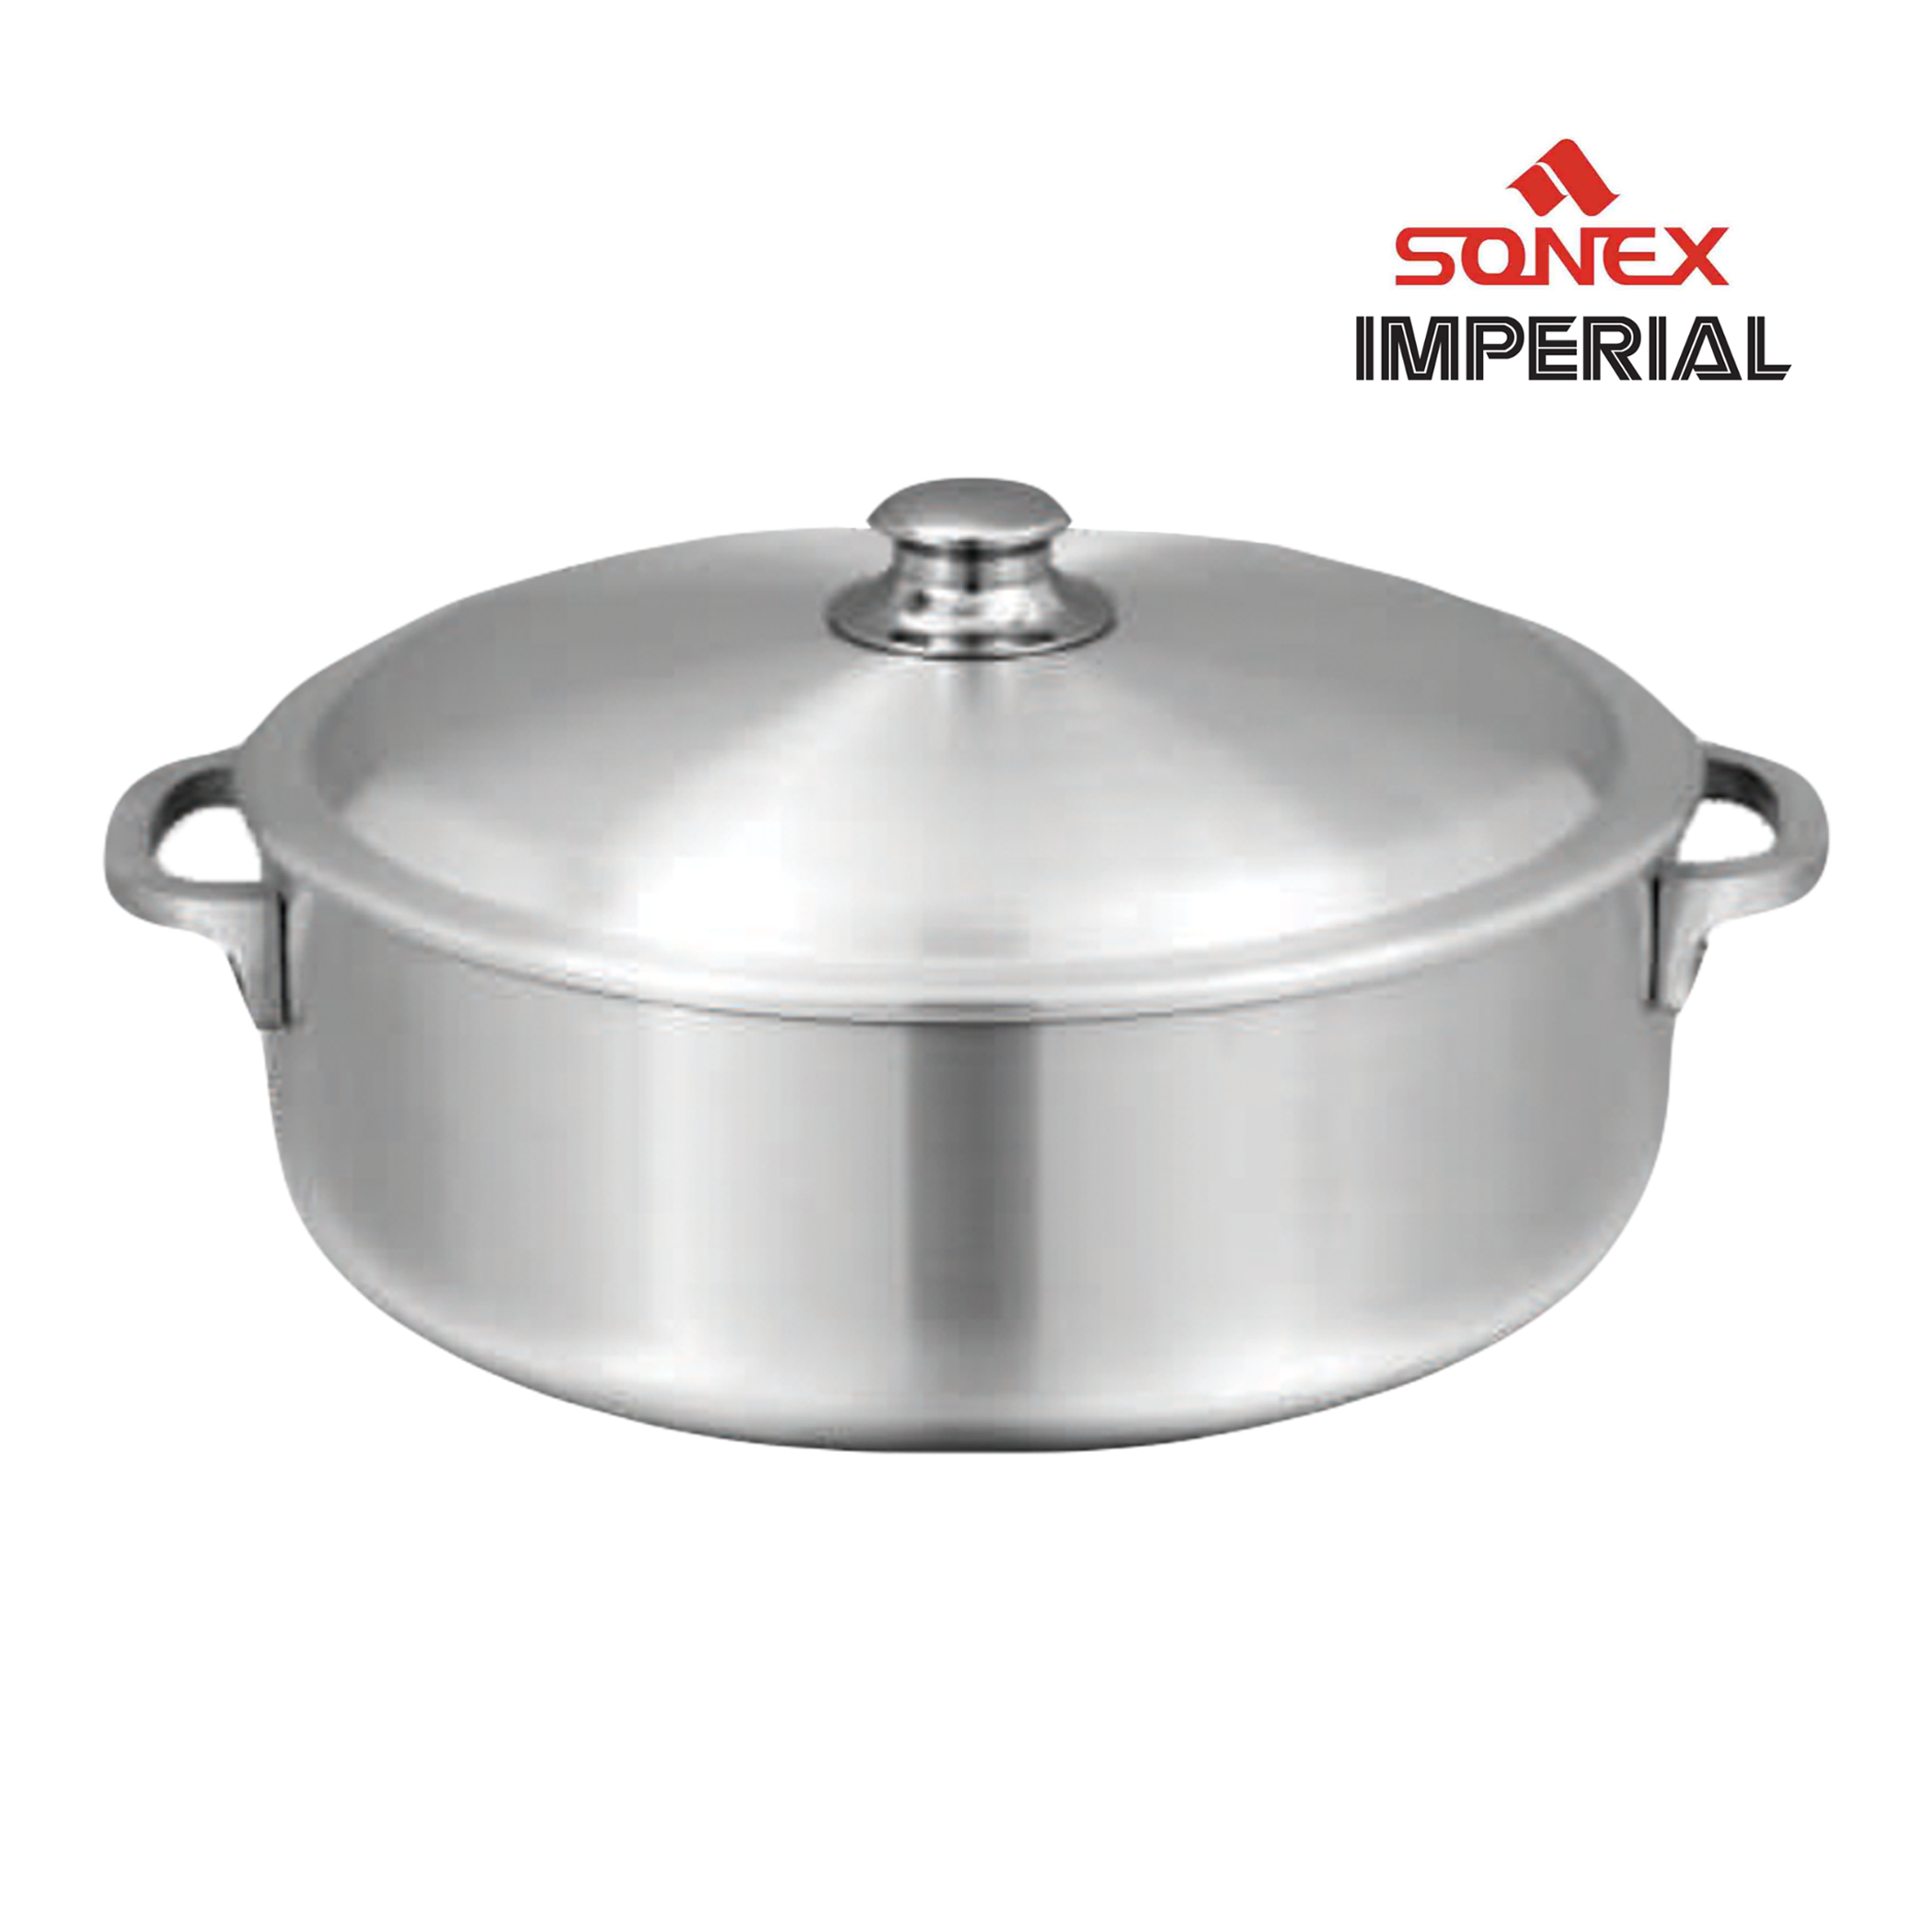 Sonex Imperial Aluminum Pot 8.5 Liters